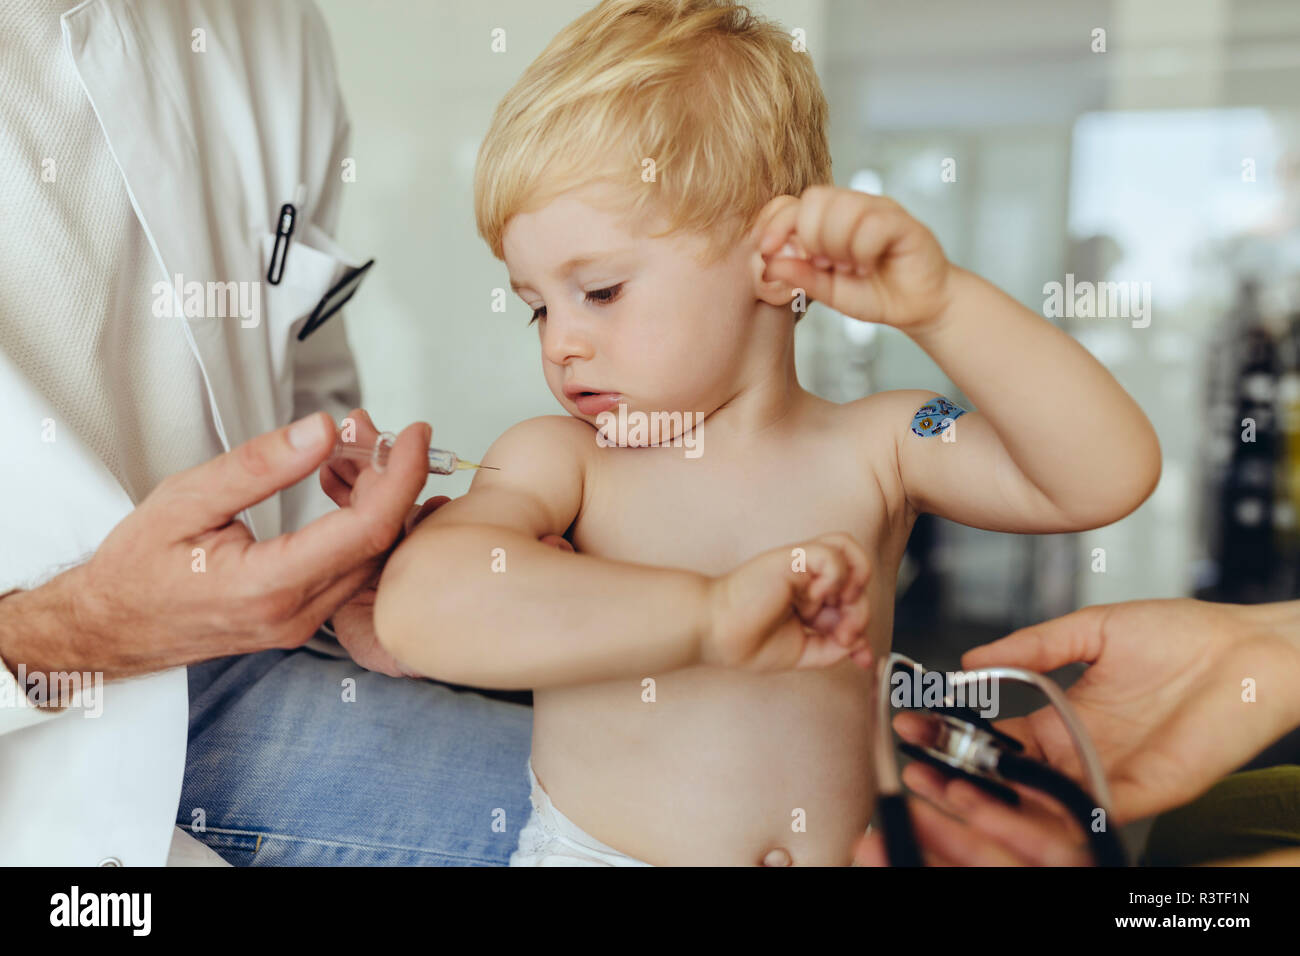 Kinderarzt impfen Toddler, Injektion von Arm des Säuglings Stockfoto